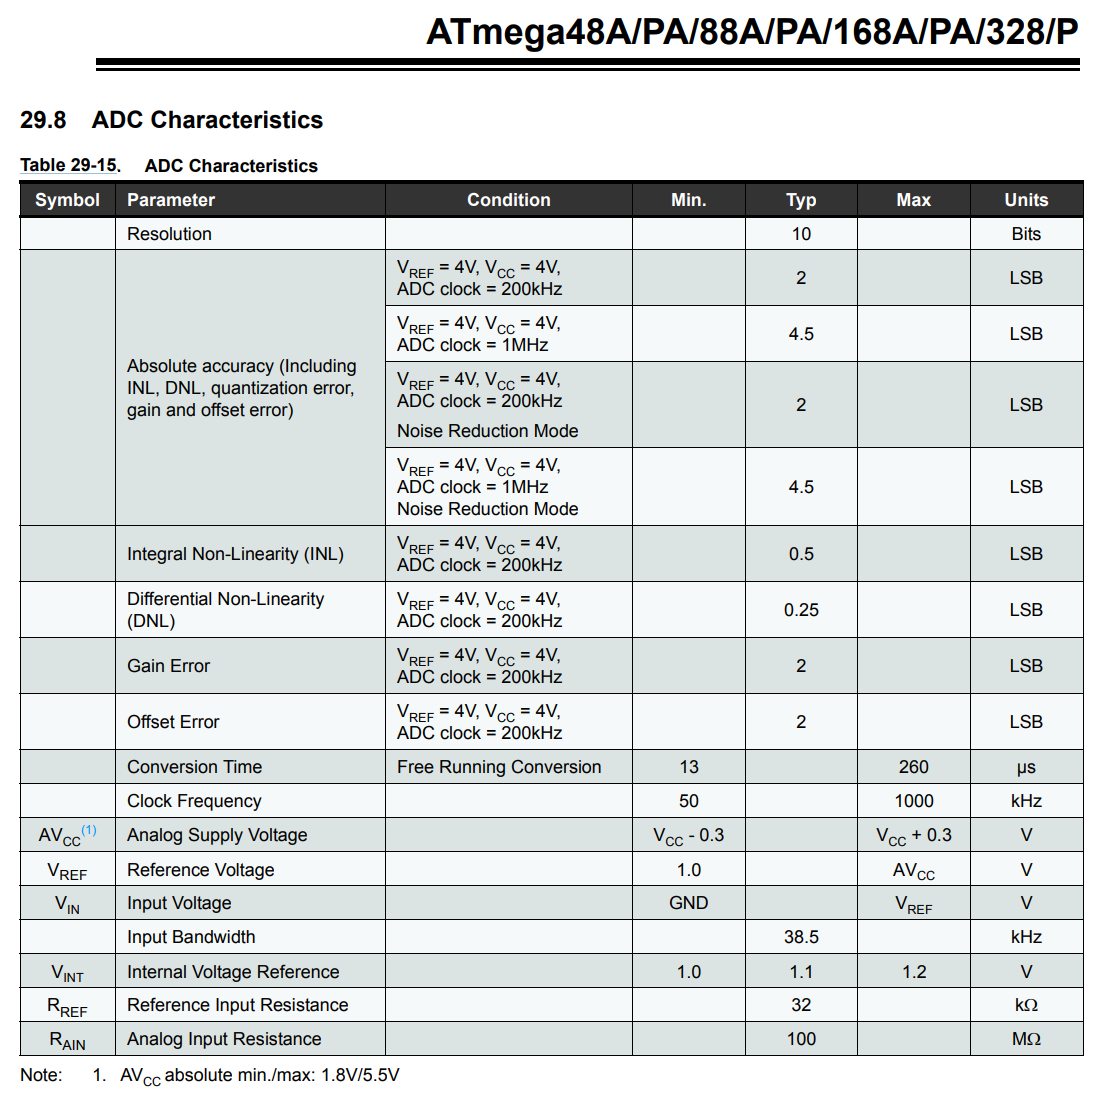 Screenshot of Table 29-16 in ATmega328 datasheet describing the ADC